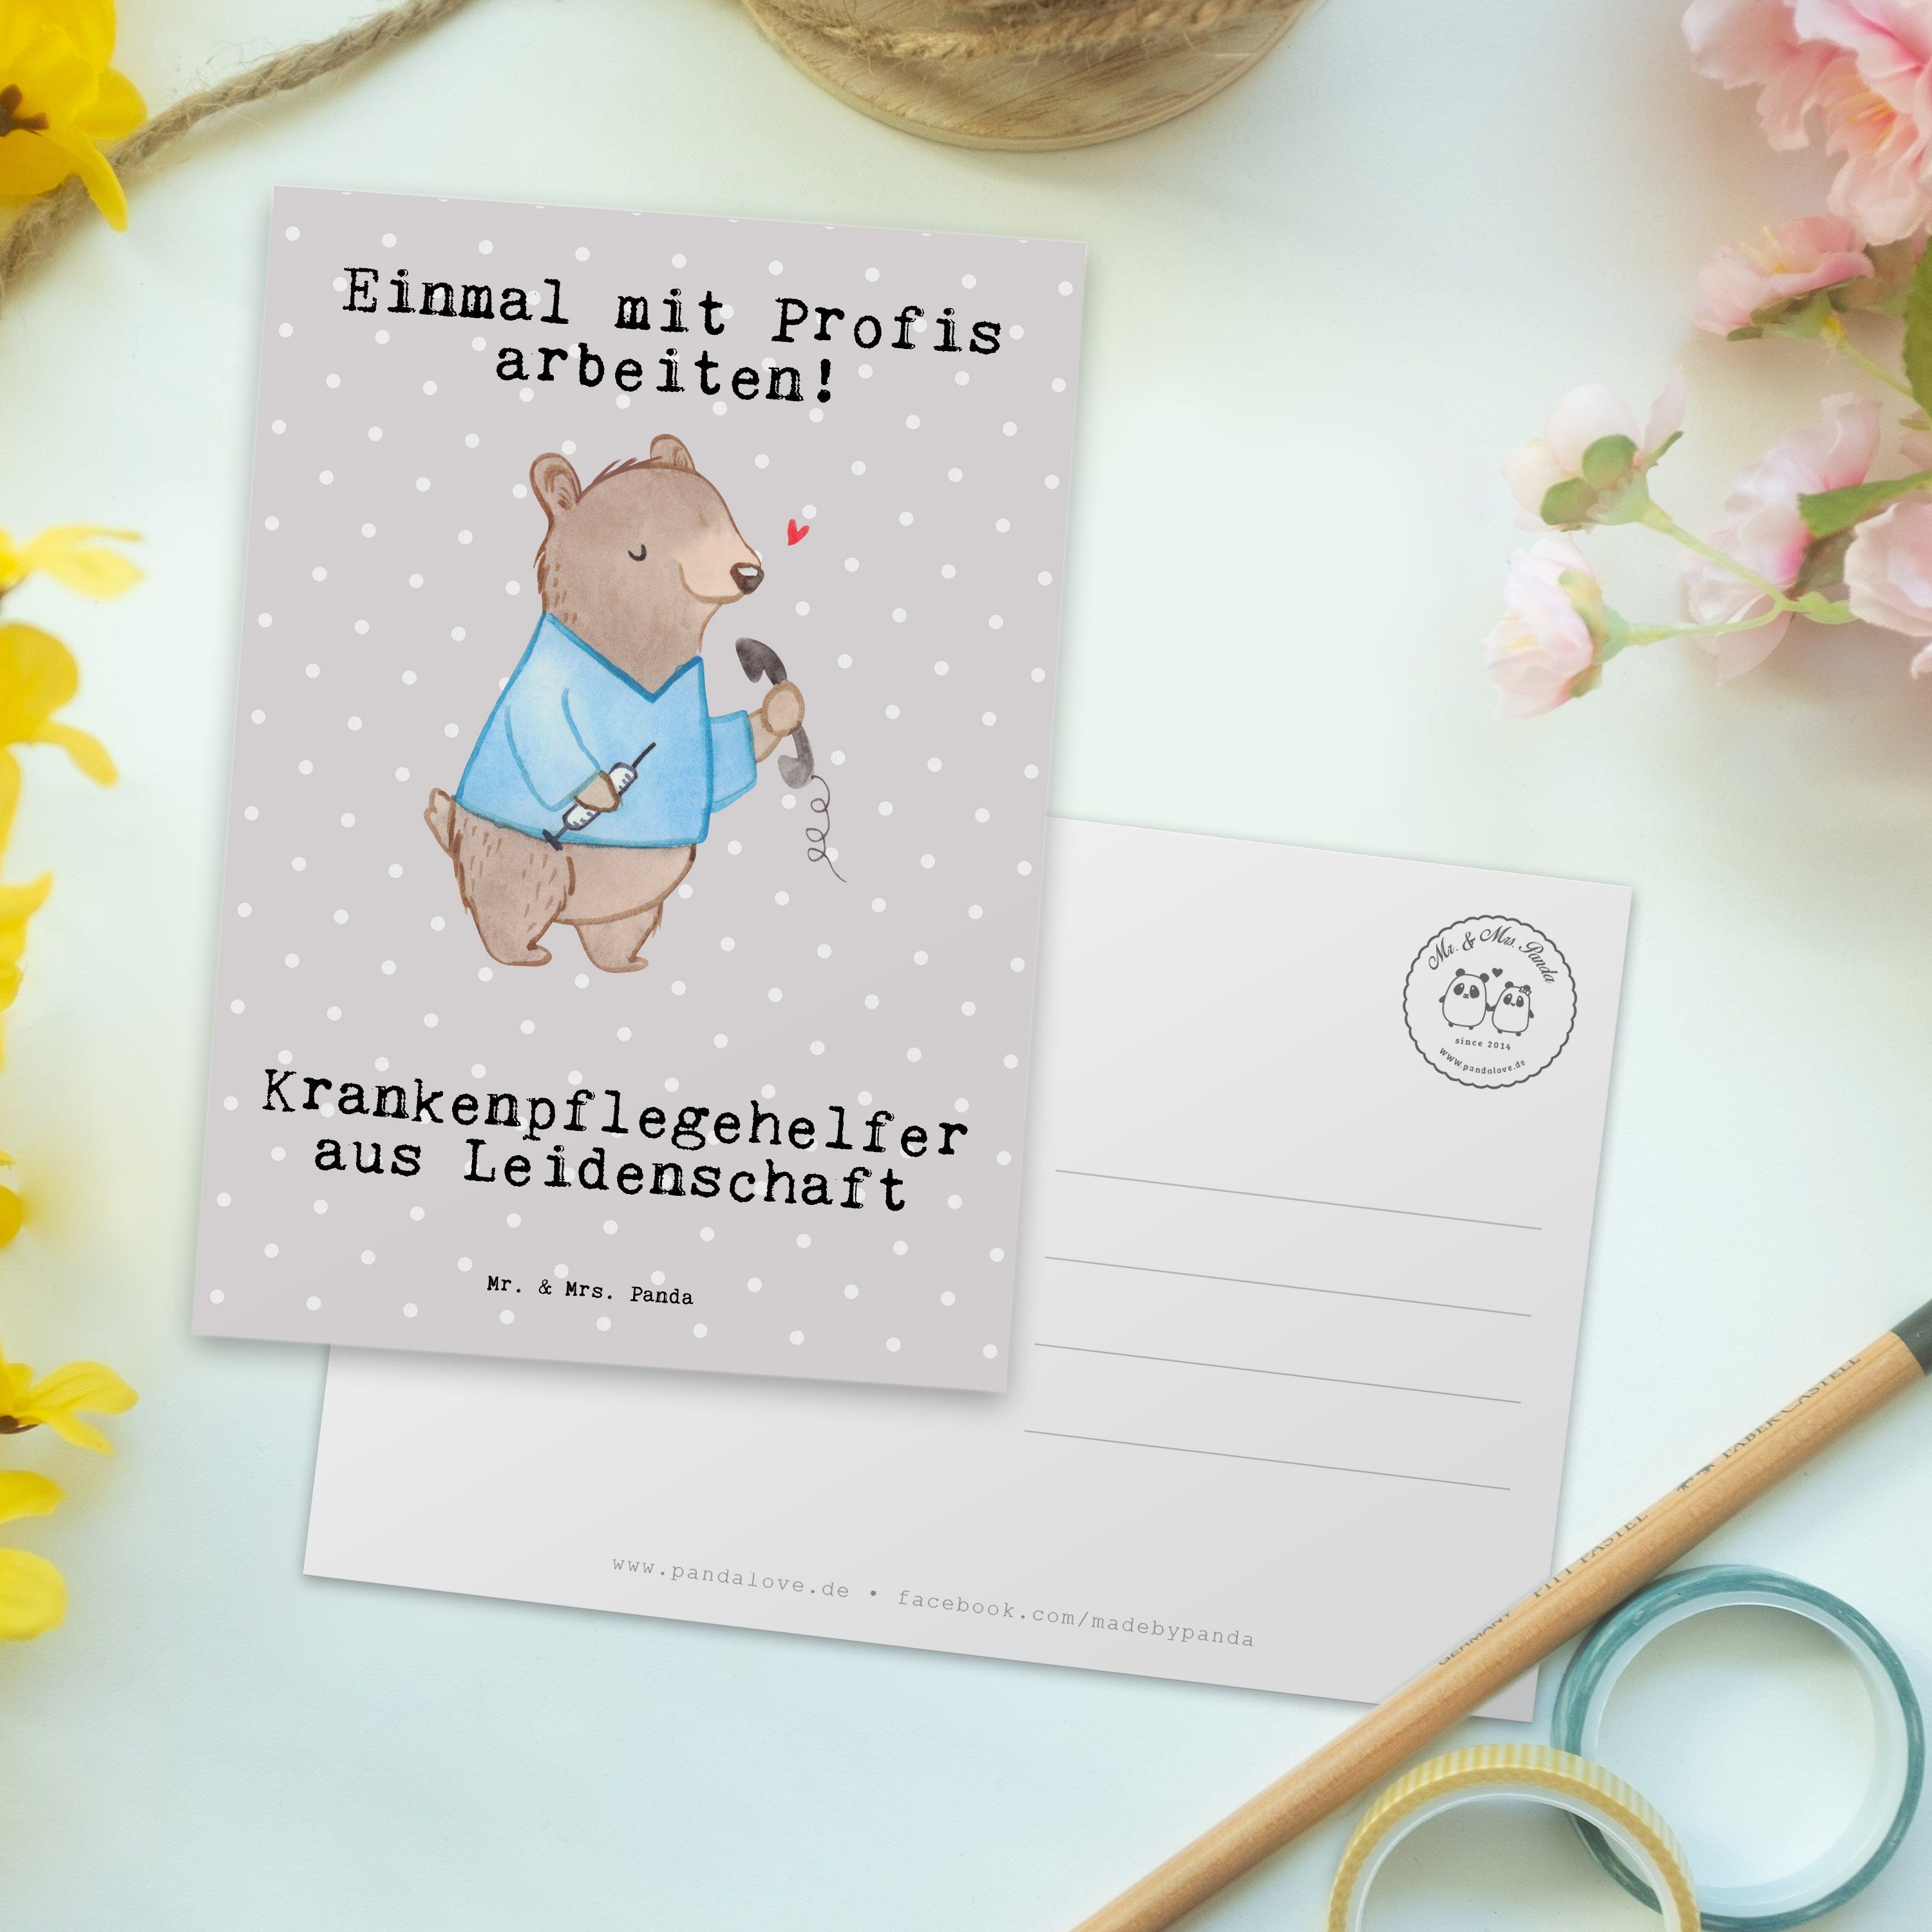 Mr. & Mrs. Pastell - Grau Geschenk, Leidenschaft Krankenpflegehelfer Postkarte Panda Danke - aus